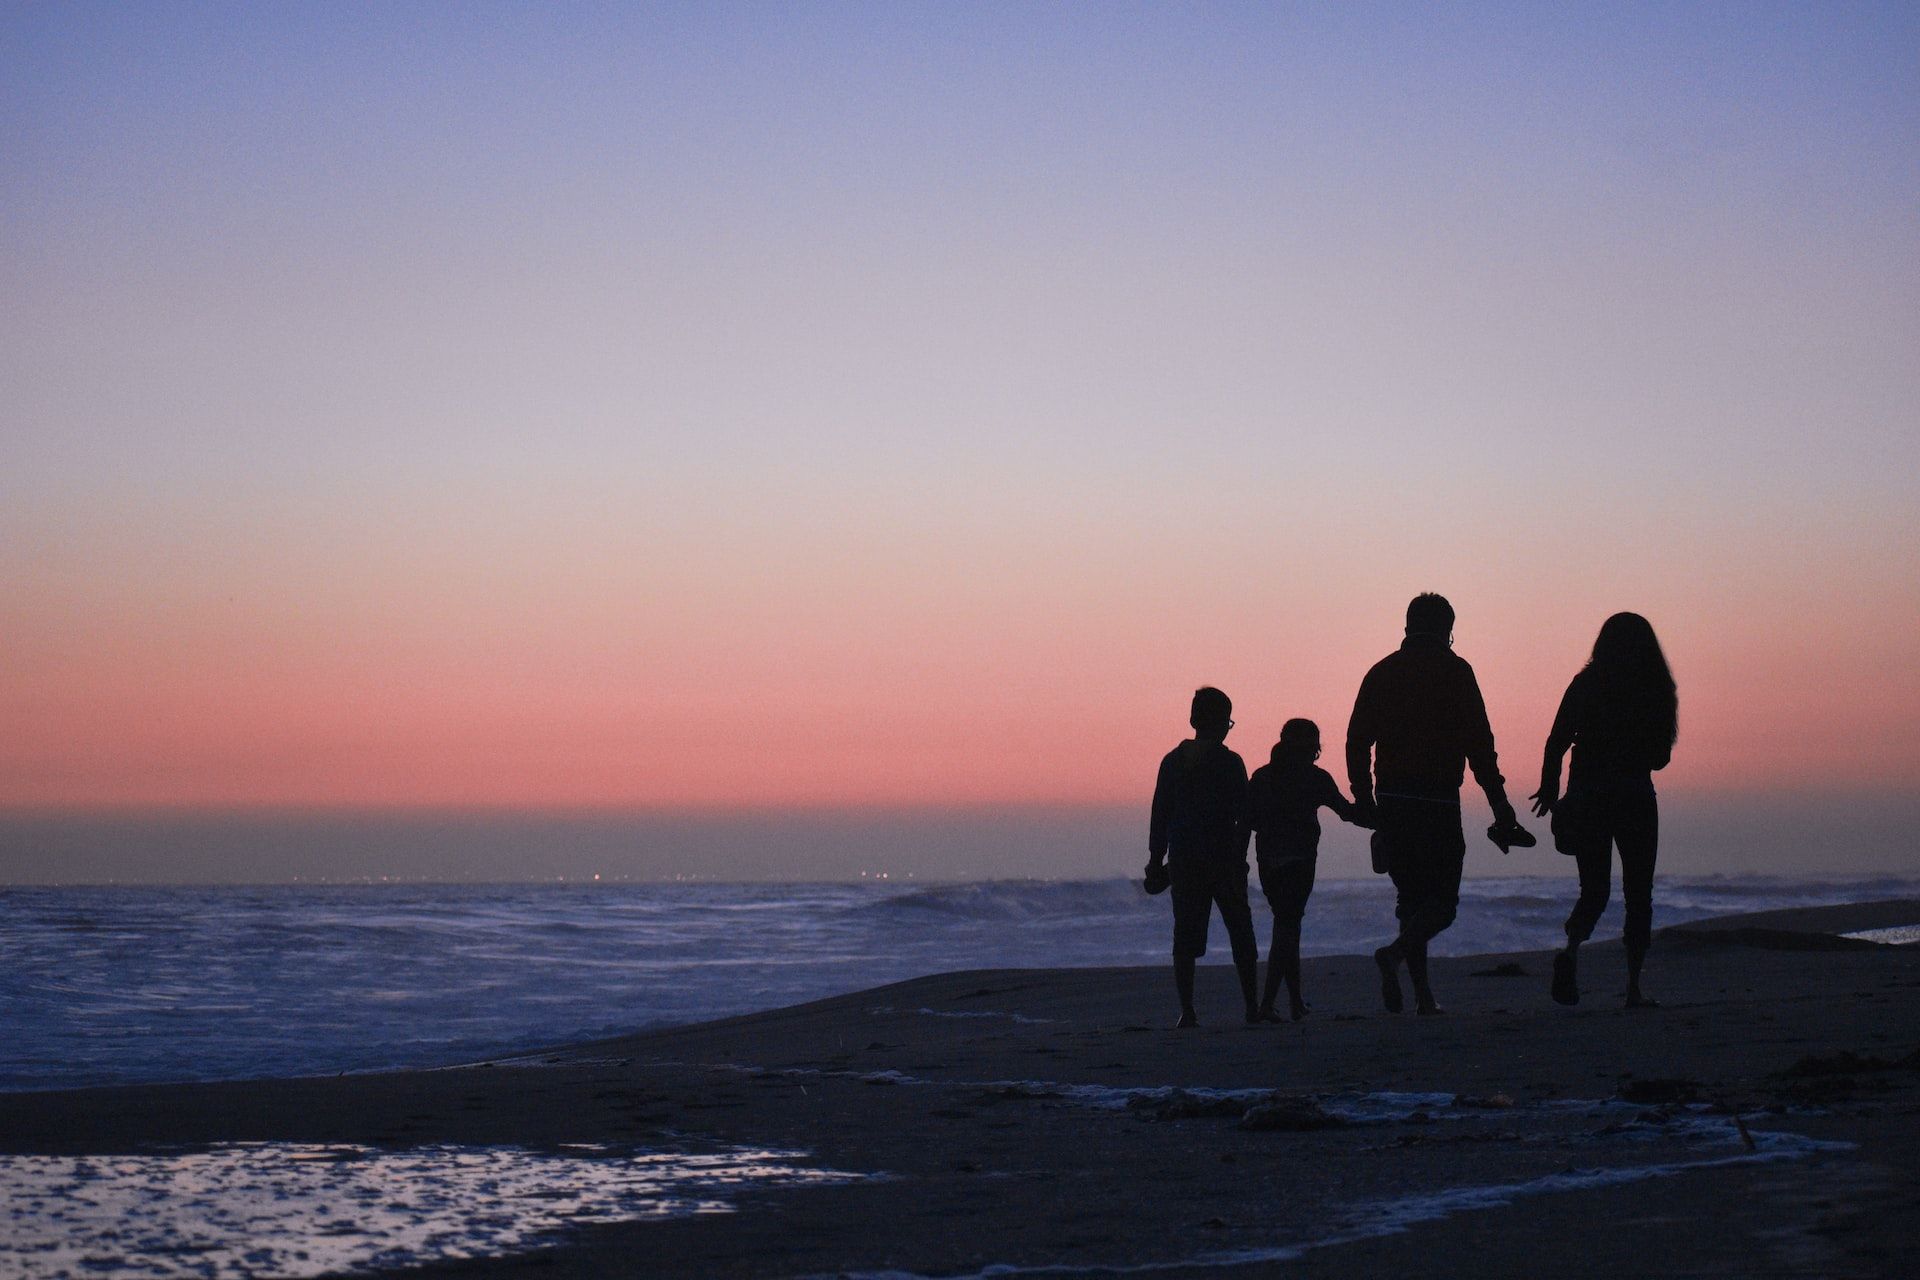 famille marchant en bord de mer au coucher du soleil - Photo by Sarah Medina on Unsplash